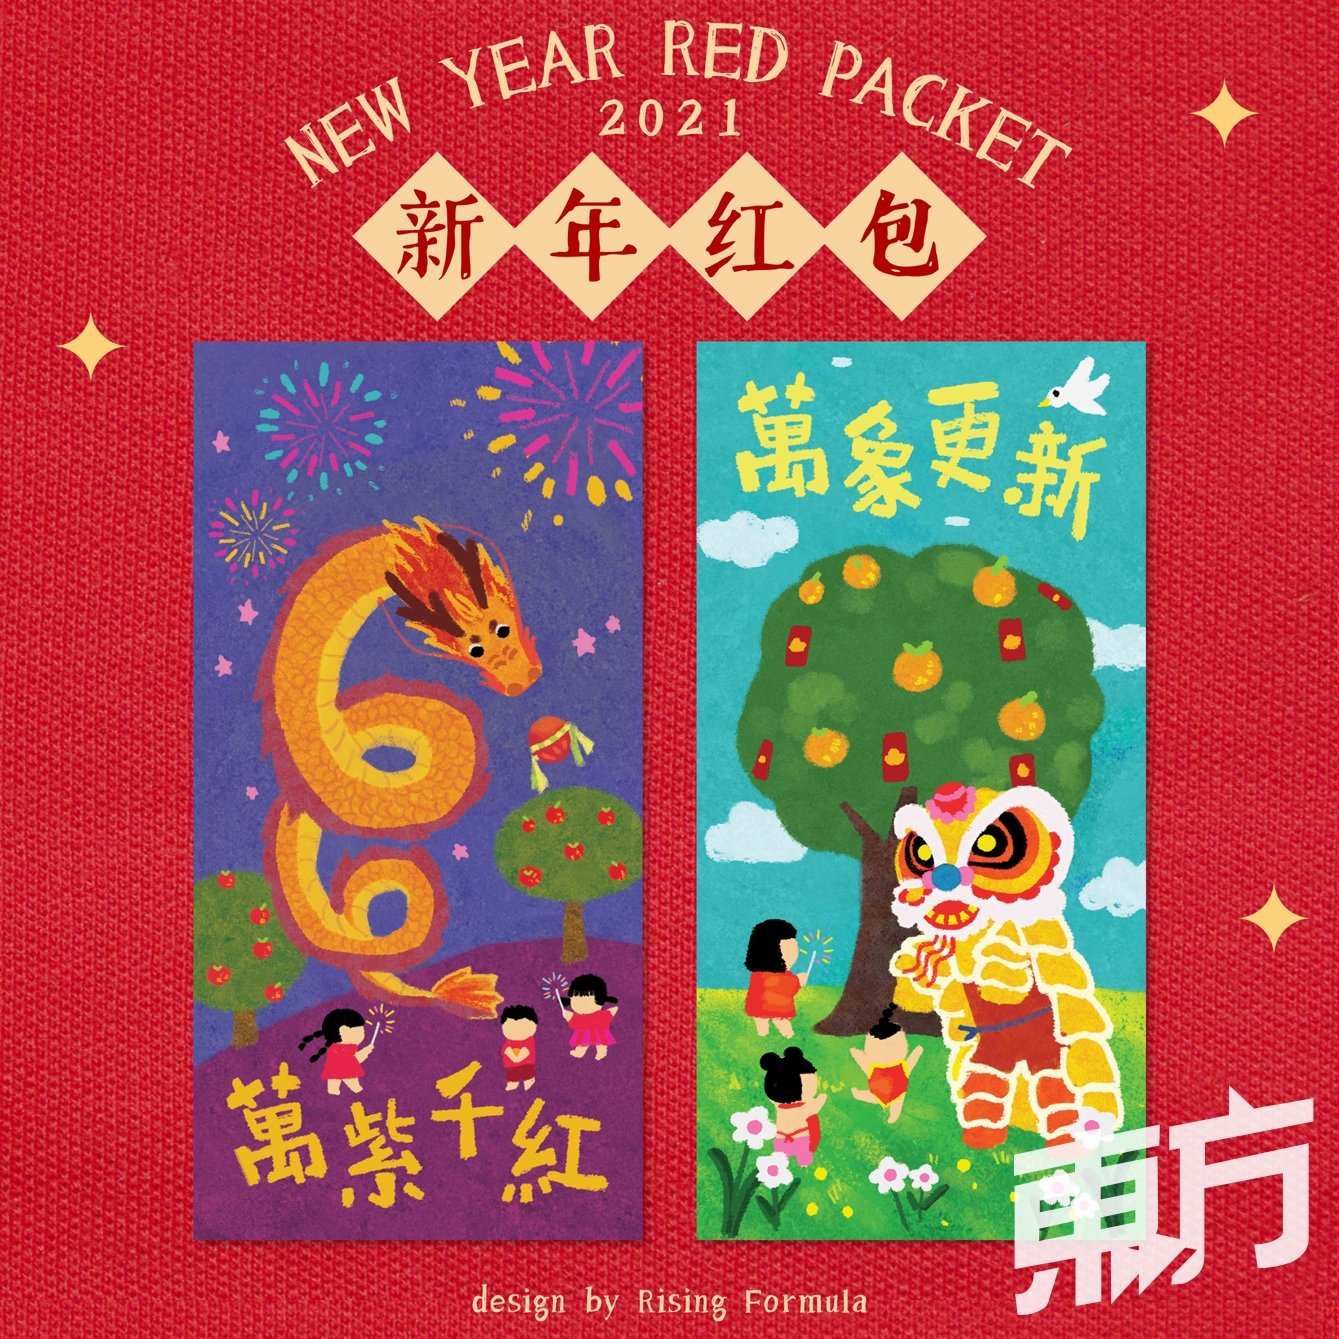 设计师以“万紫千红”和“万象更新”为出发点，透过插画传递新年新气象的寓意，预祝各位在新的一年里万事顺心。